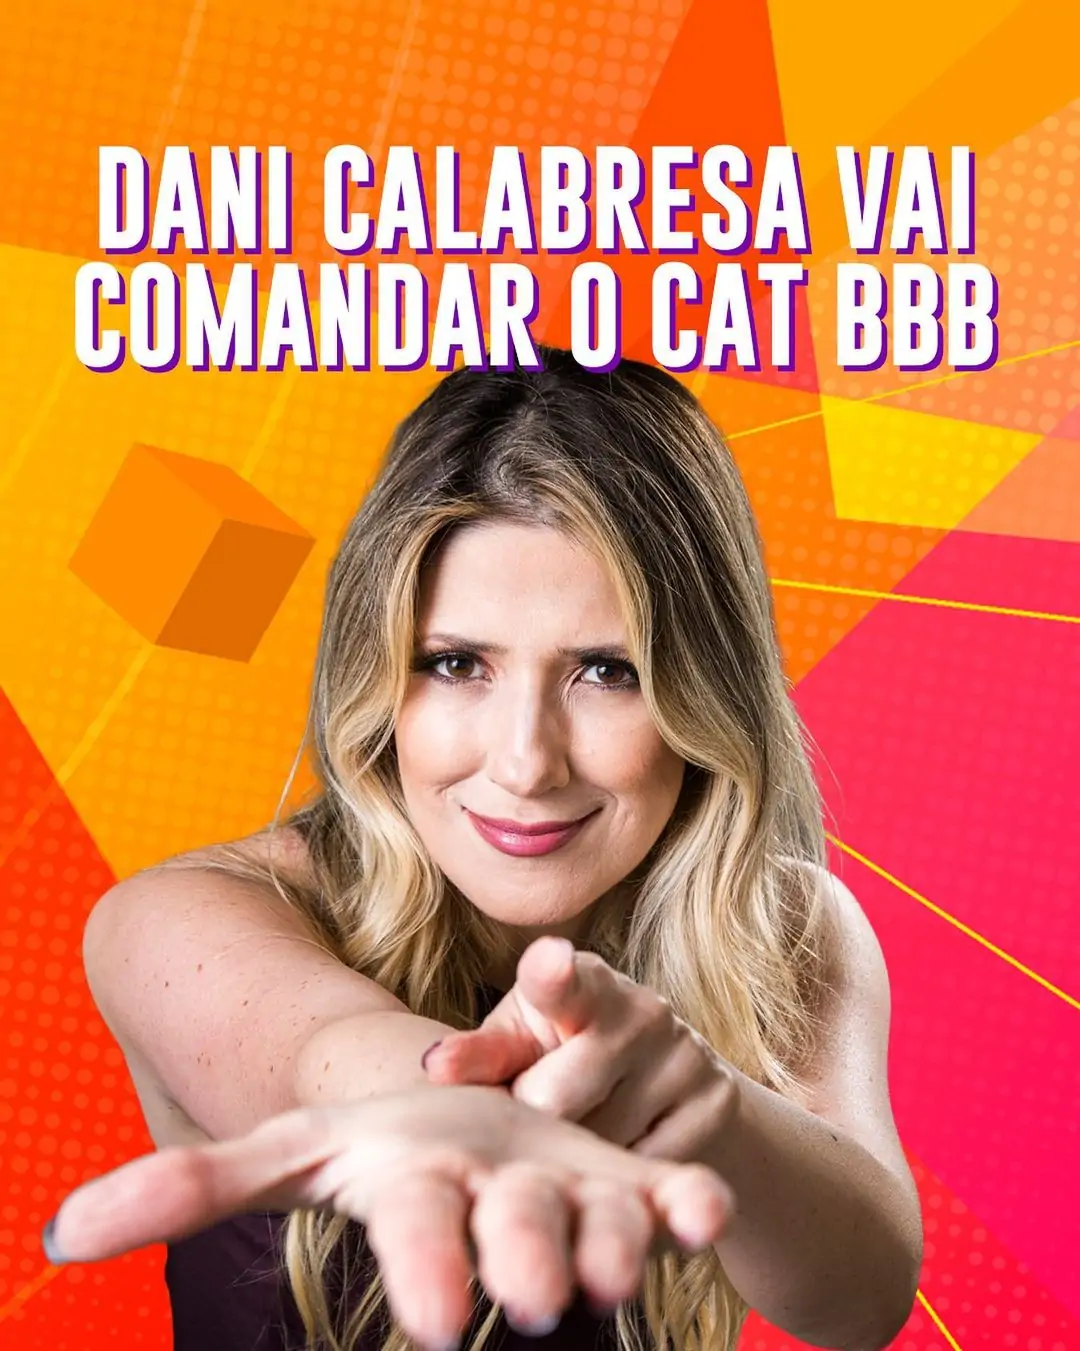 Participantes do BBB: Dani Calabresa substitui Rafael Portugal no Cat BBB (Foto: Divulgação BBB)